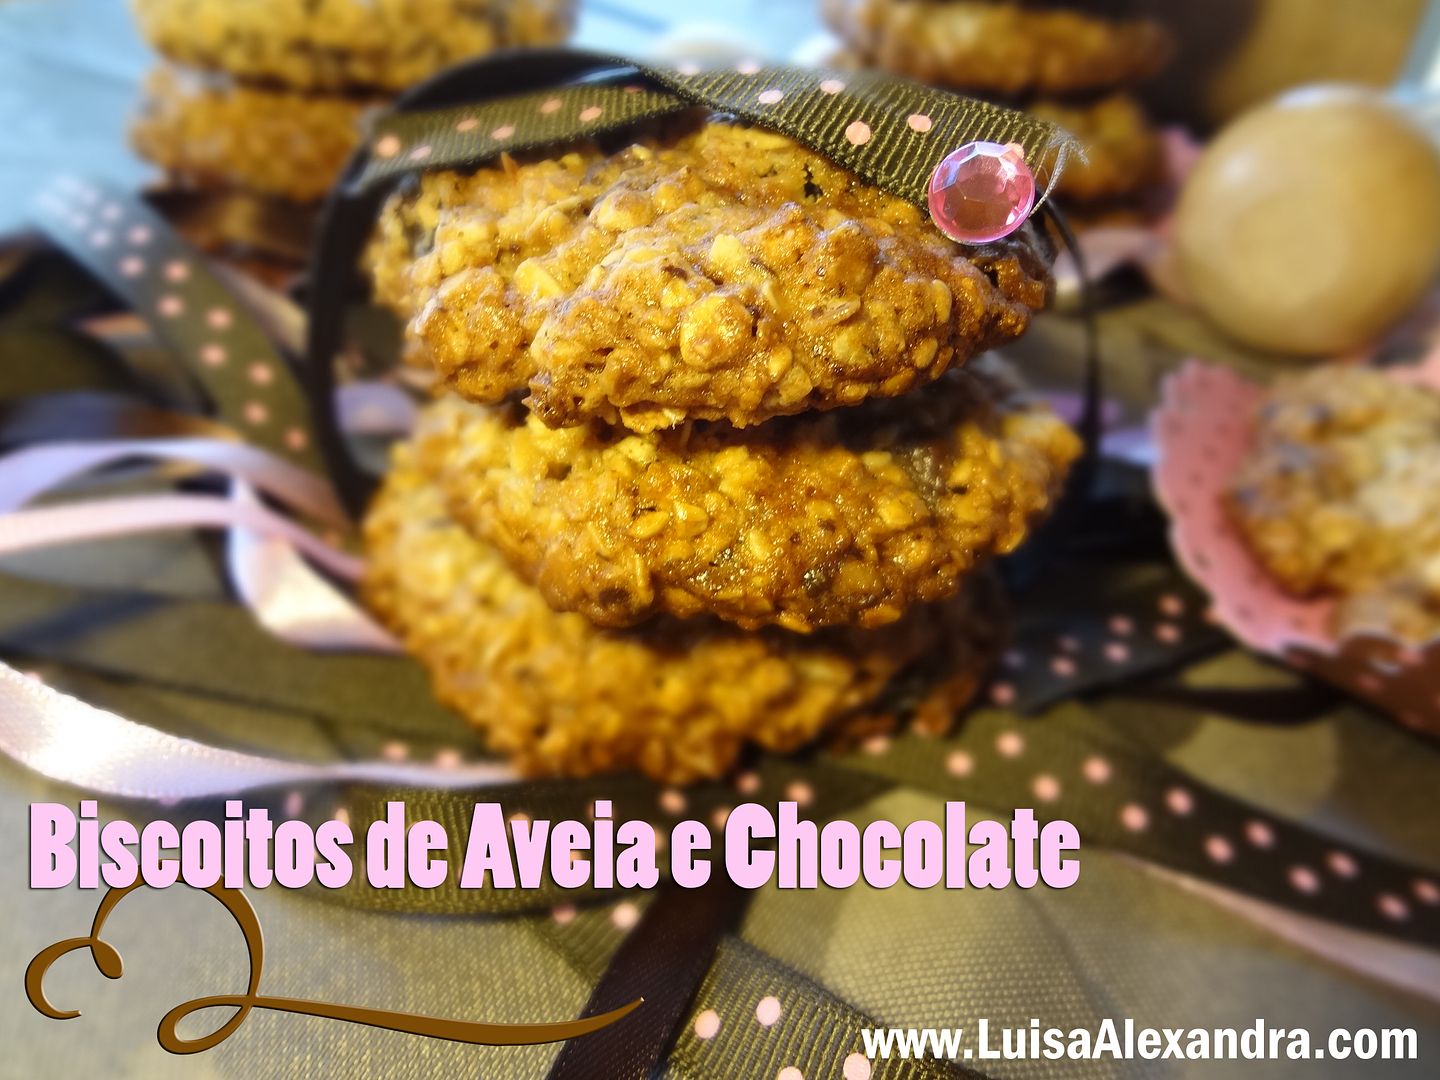 Biscoitos de Aveia e Chocolate photo DSC05583-1.jpg